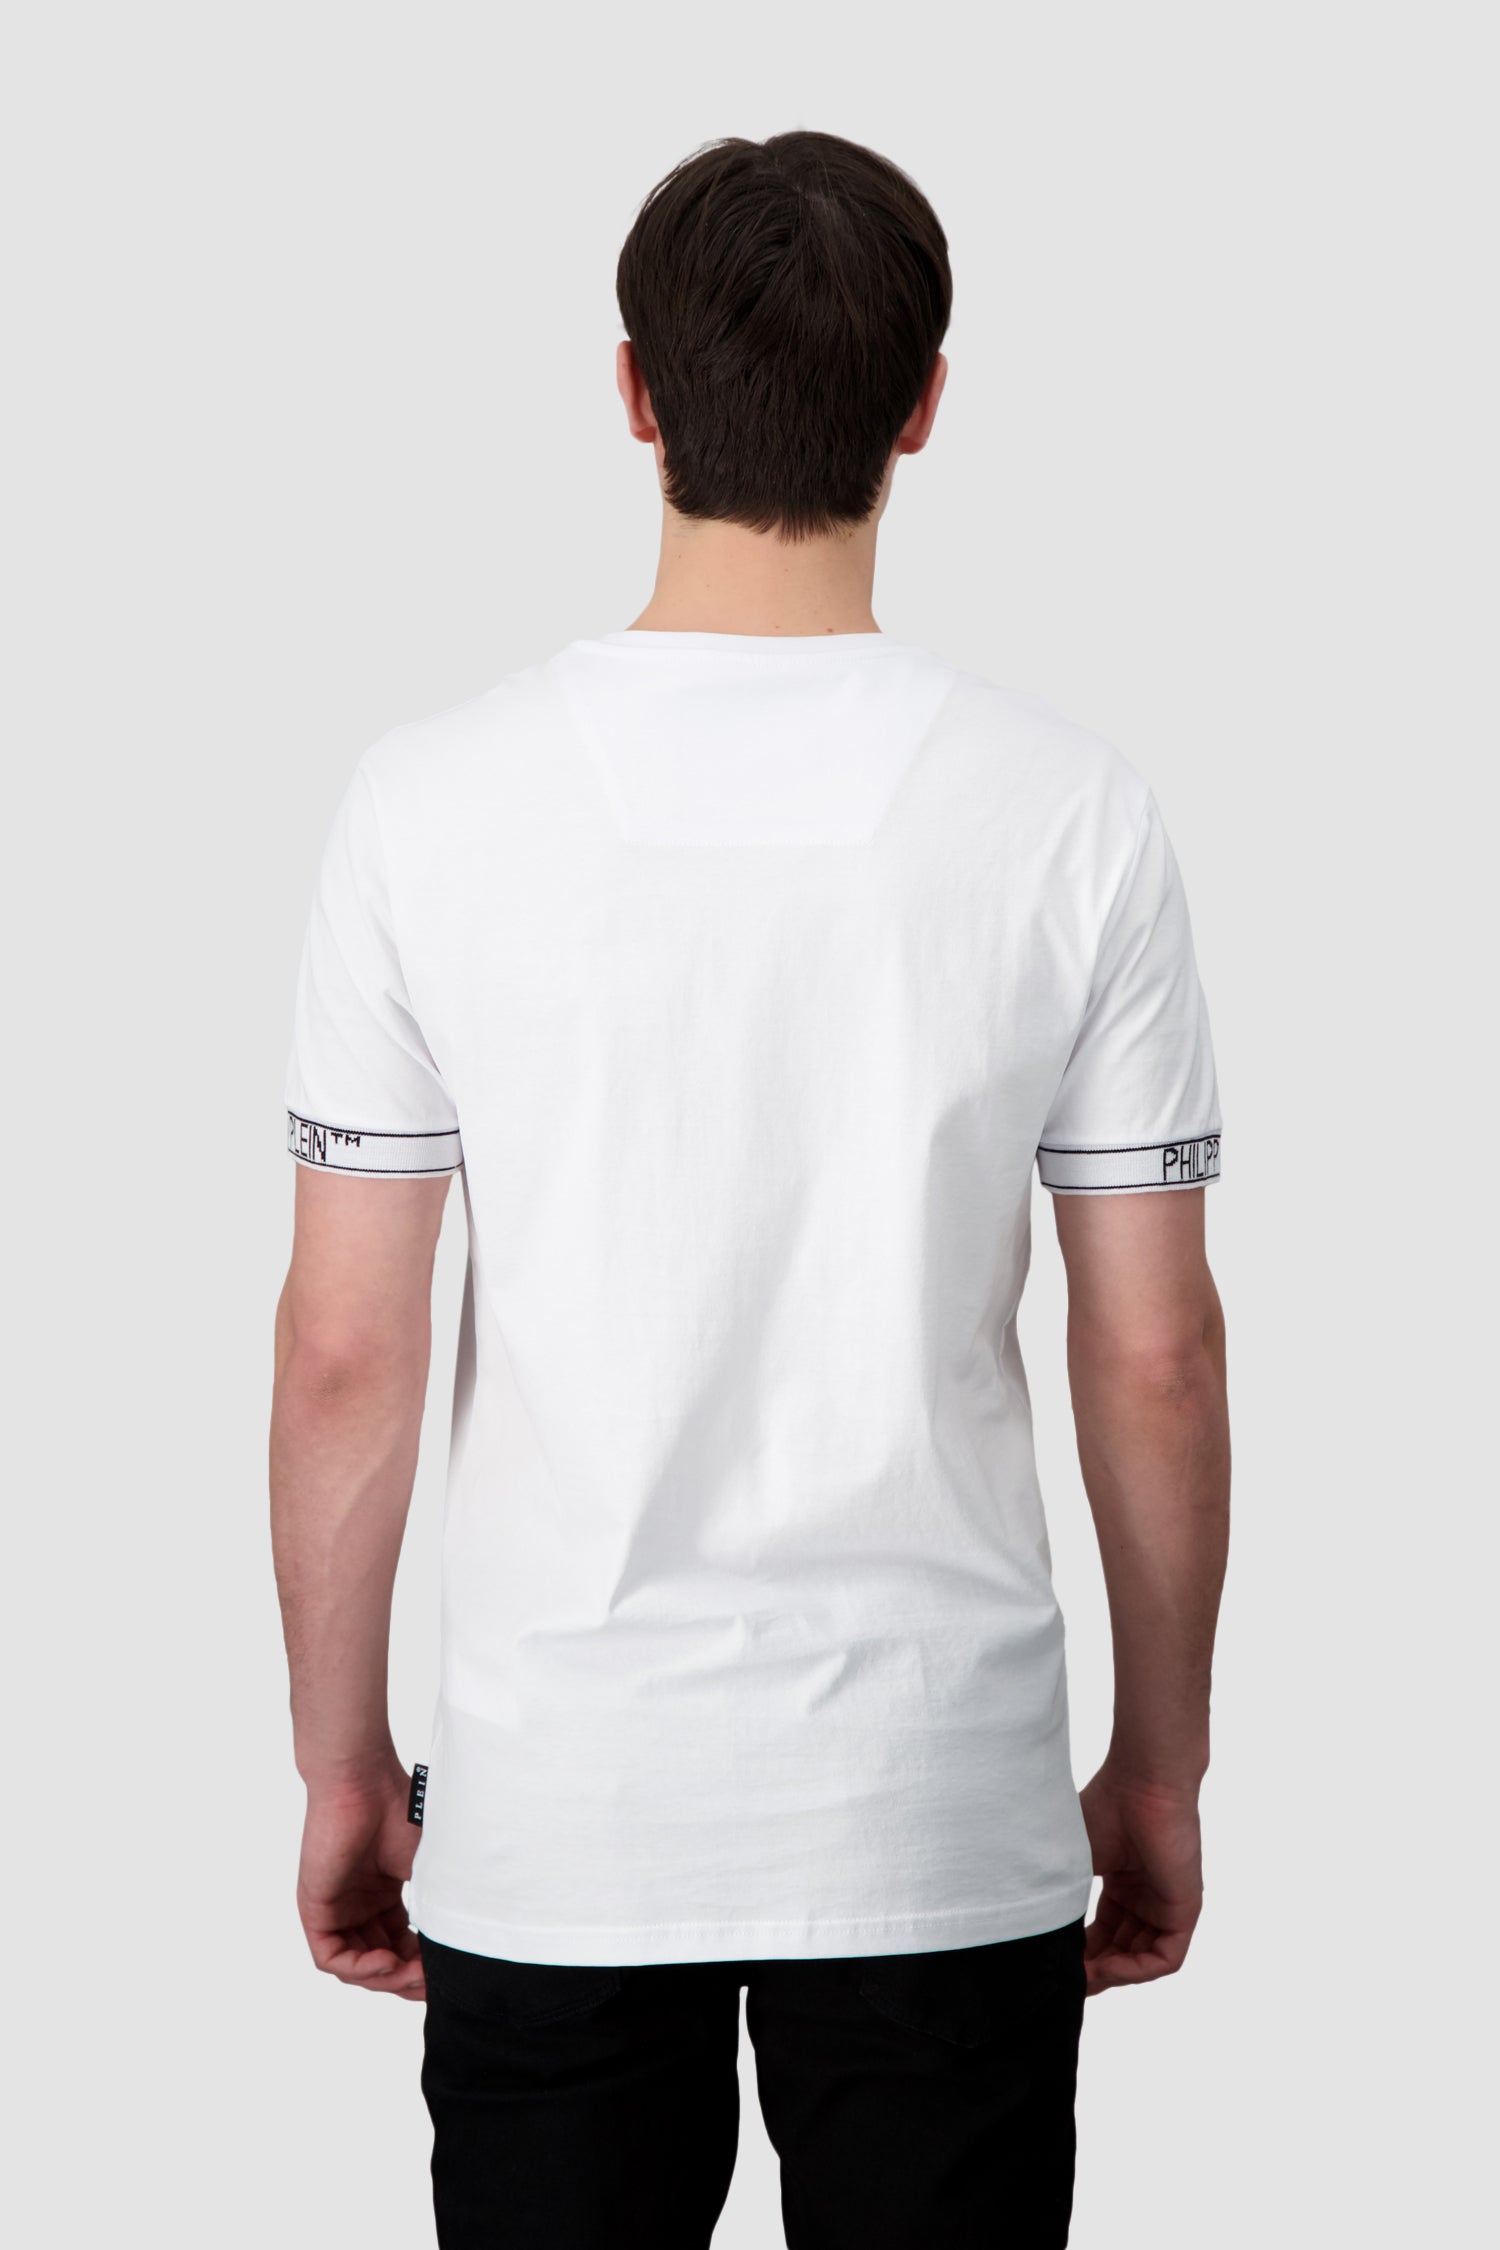 Philipp Plein White V-Neck SS 2 T-Shirt